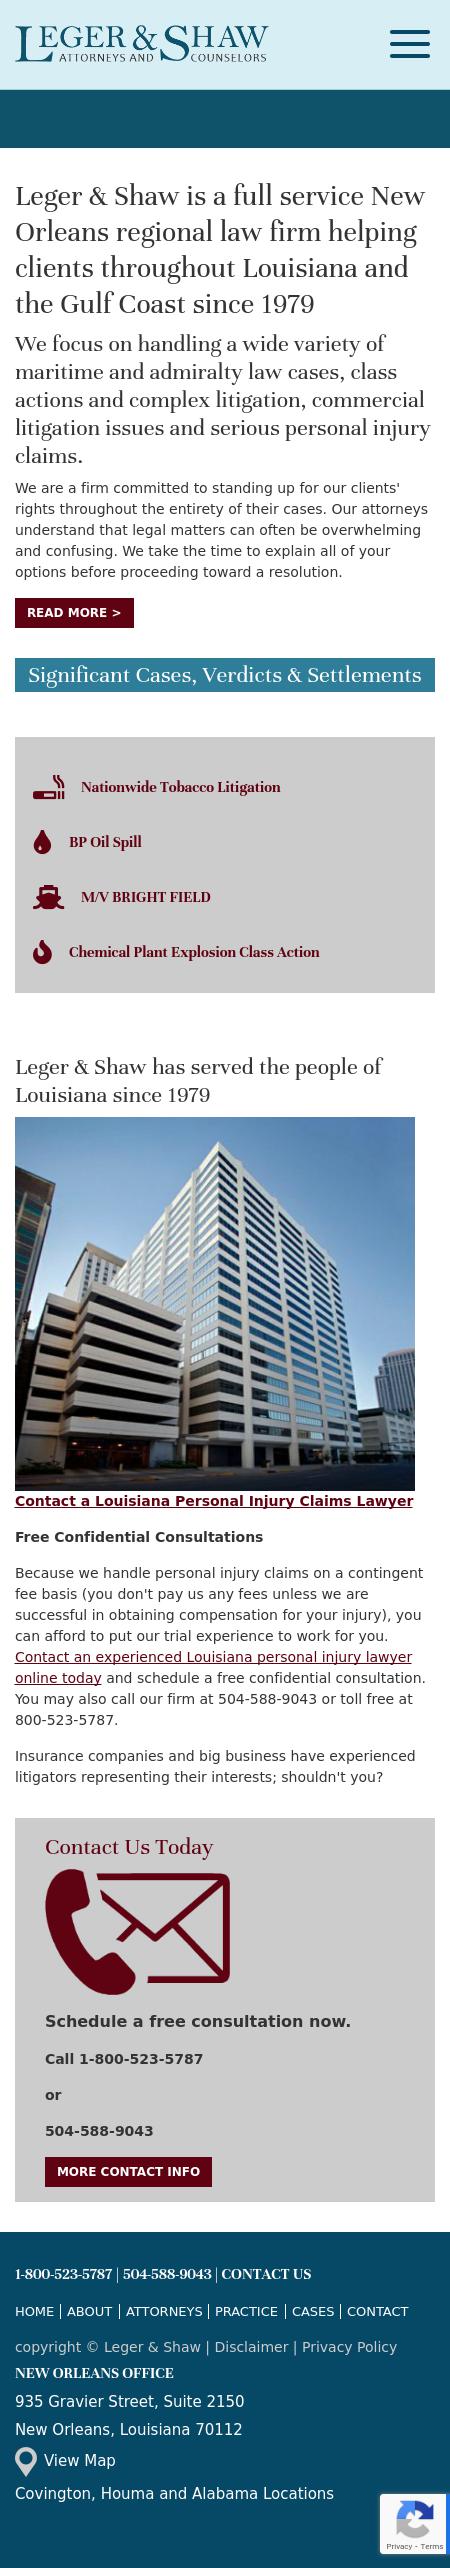 Leger & Shaw - Covington LA Lawyers